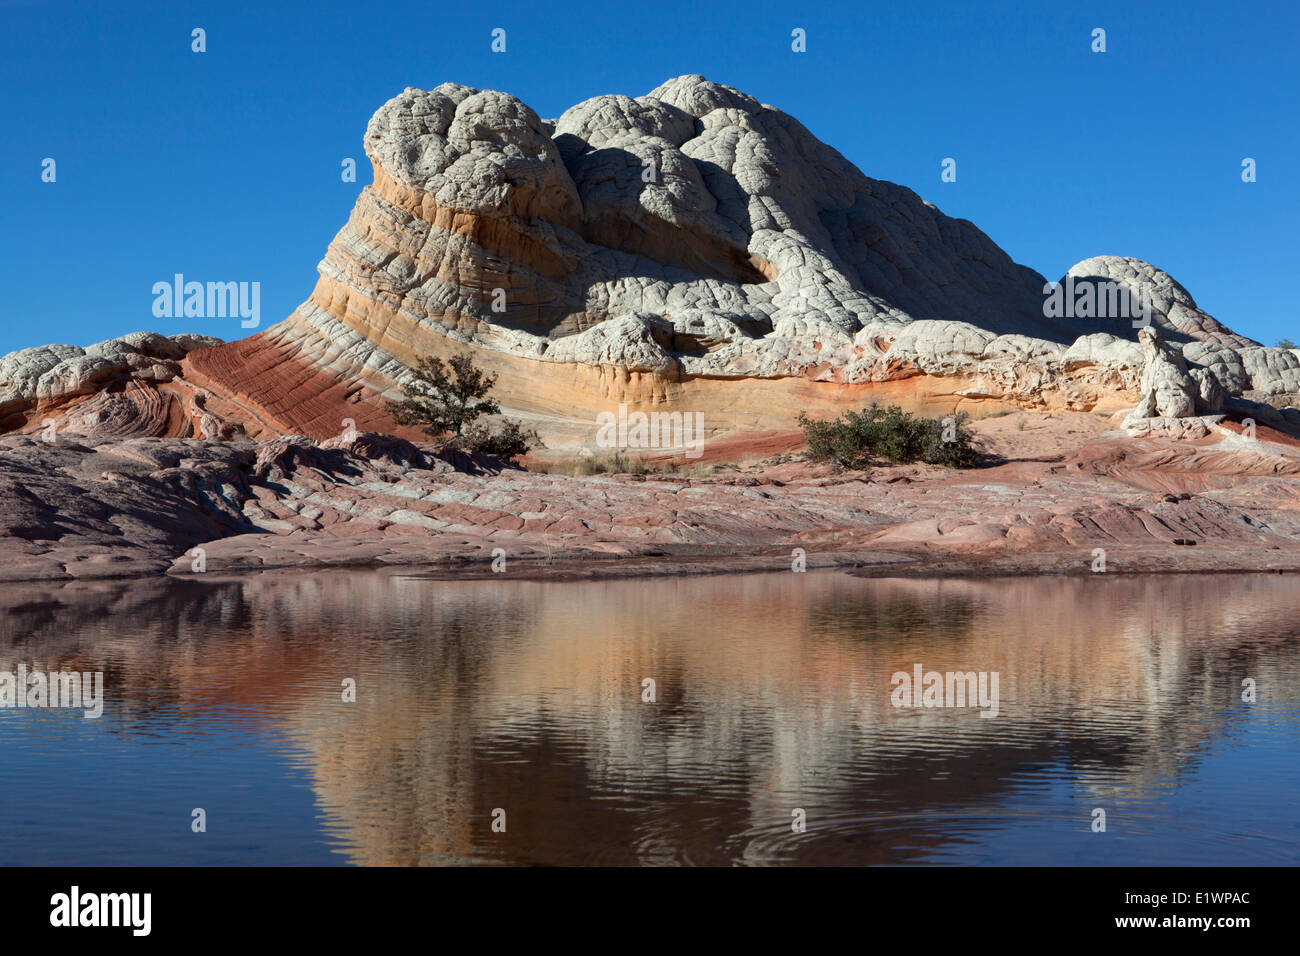 Sandstein spiegelt sich in Tarn an White Tasche, Paria Canyon - Vermillion Cliffs Wilderness, Arizona, Vereinigte Staaten Stockfoto